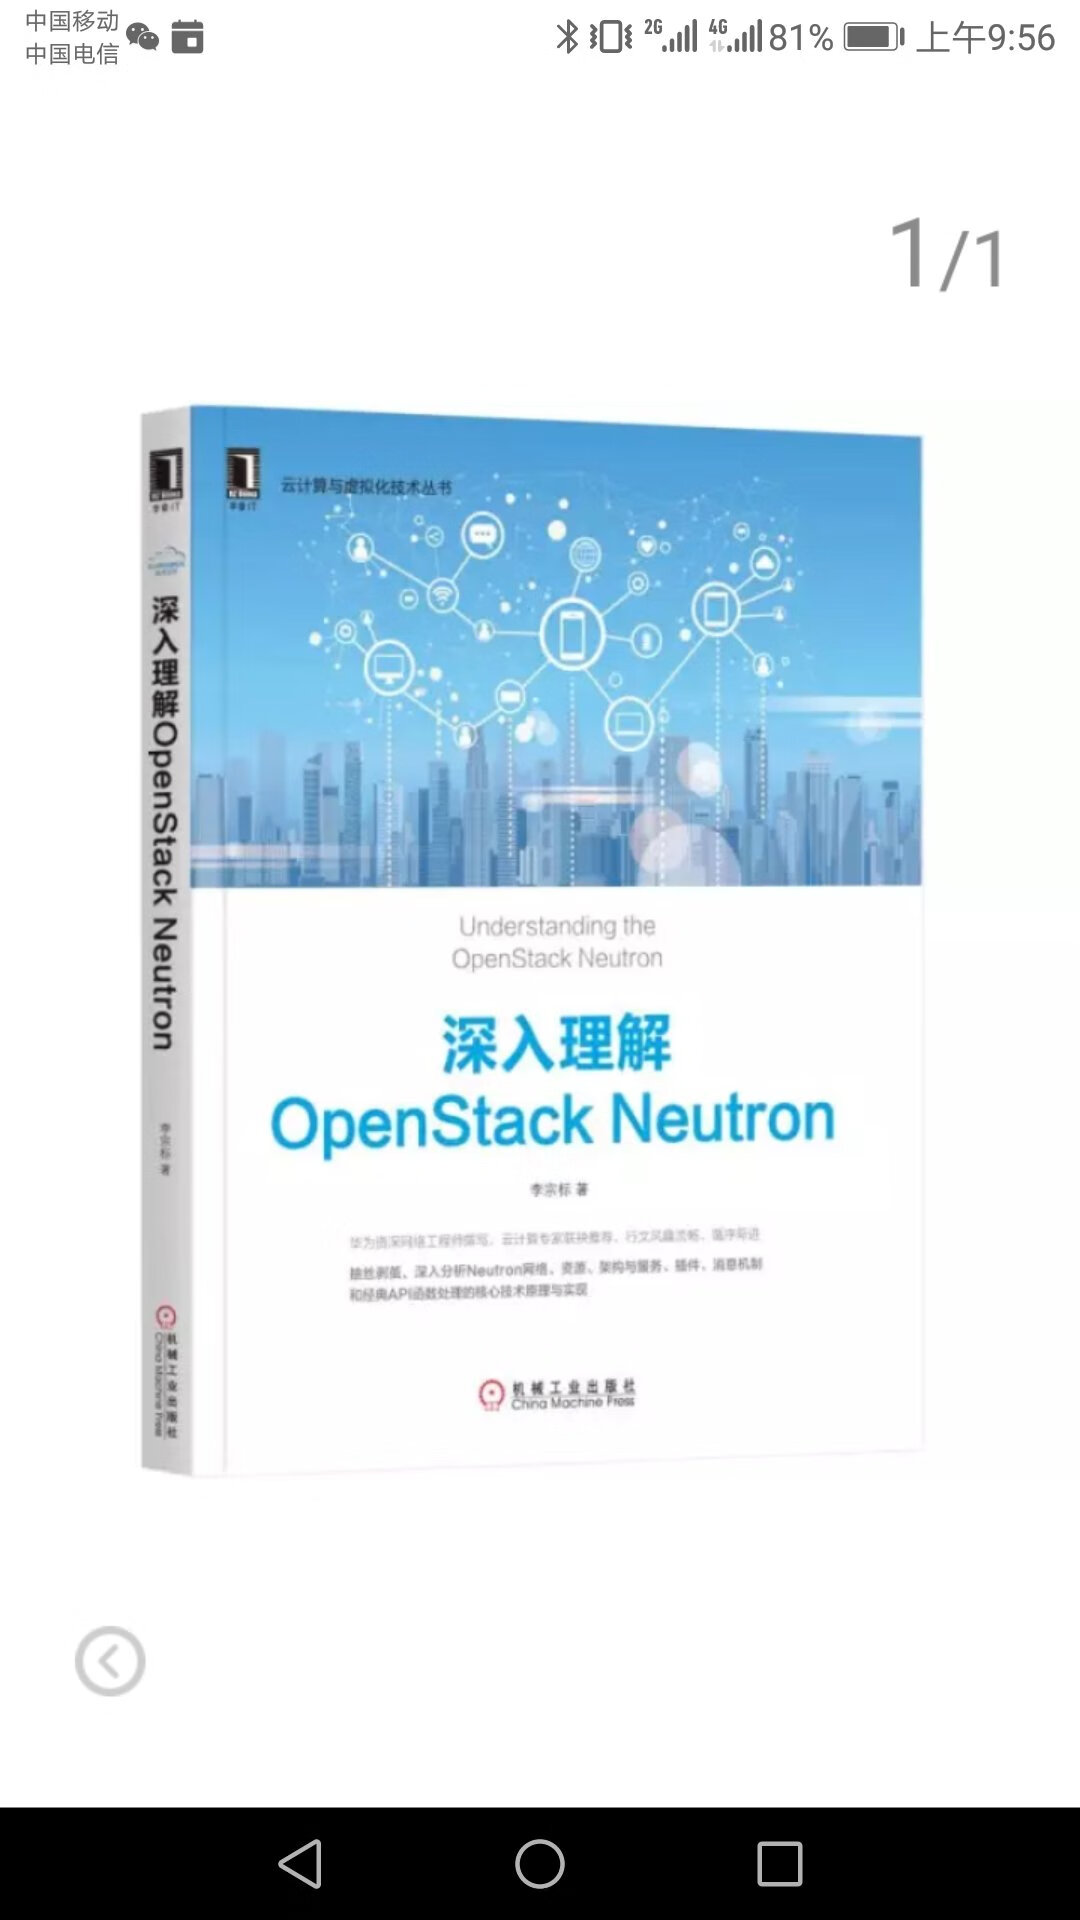 全面介绍了openstack neutron网络架构，对理解云平台网络架构有较高的参考作用。